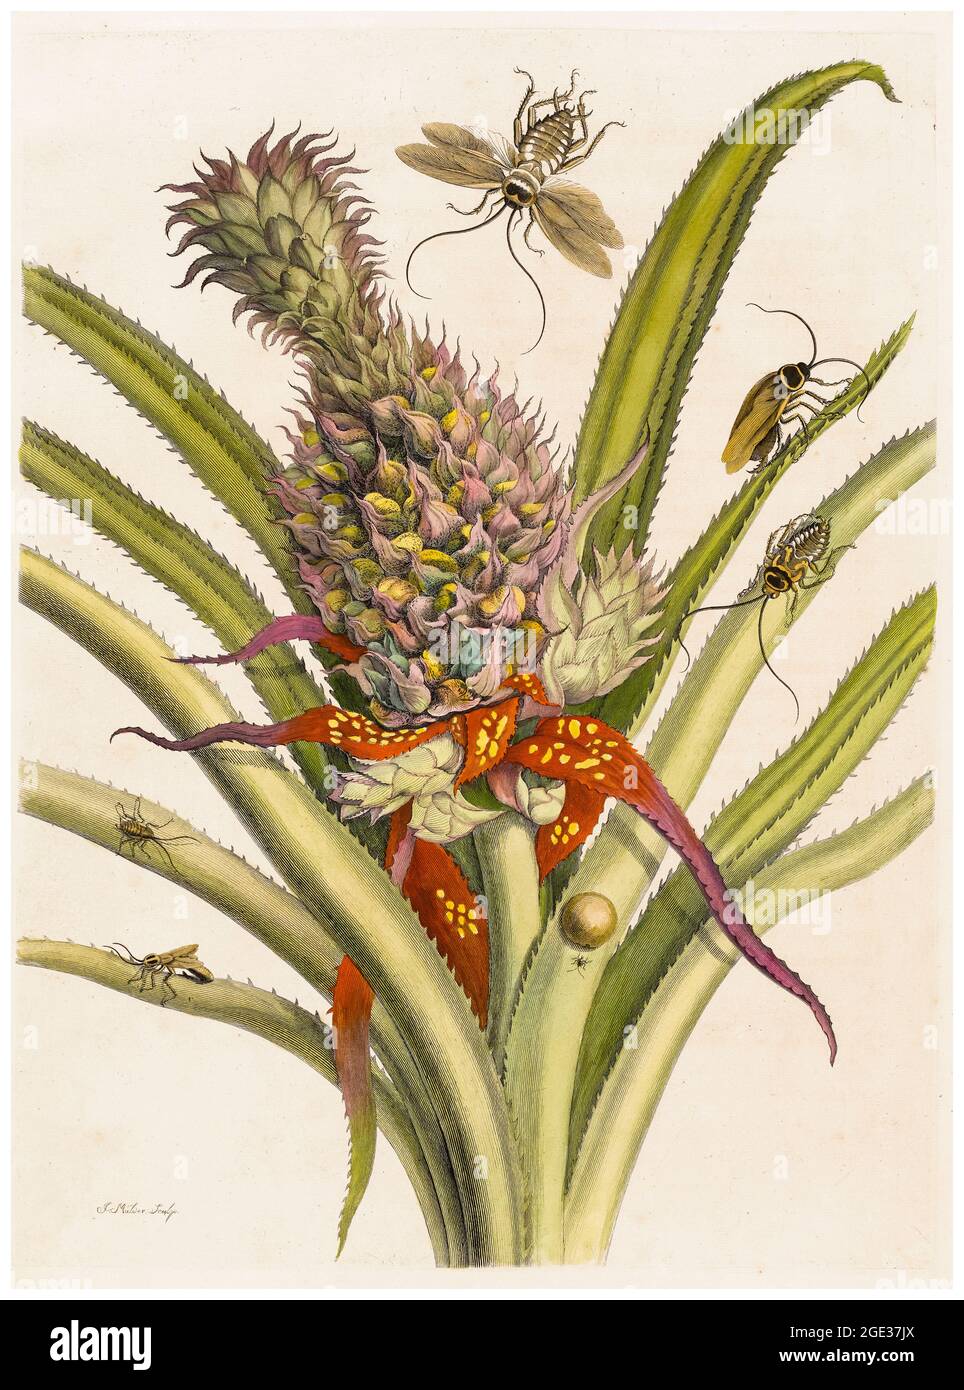 Maria Sibylla Merian, illustrazione del XVIII secolo, ananas con scarafaggi sudamericani, 1719 Foto Stock